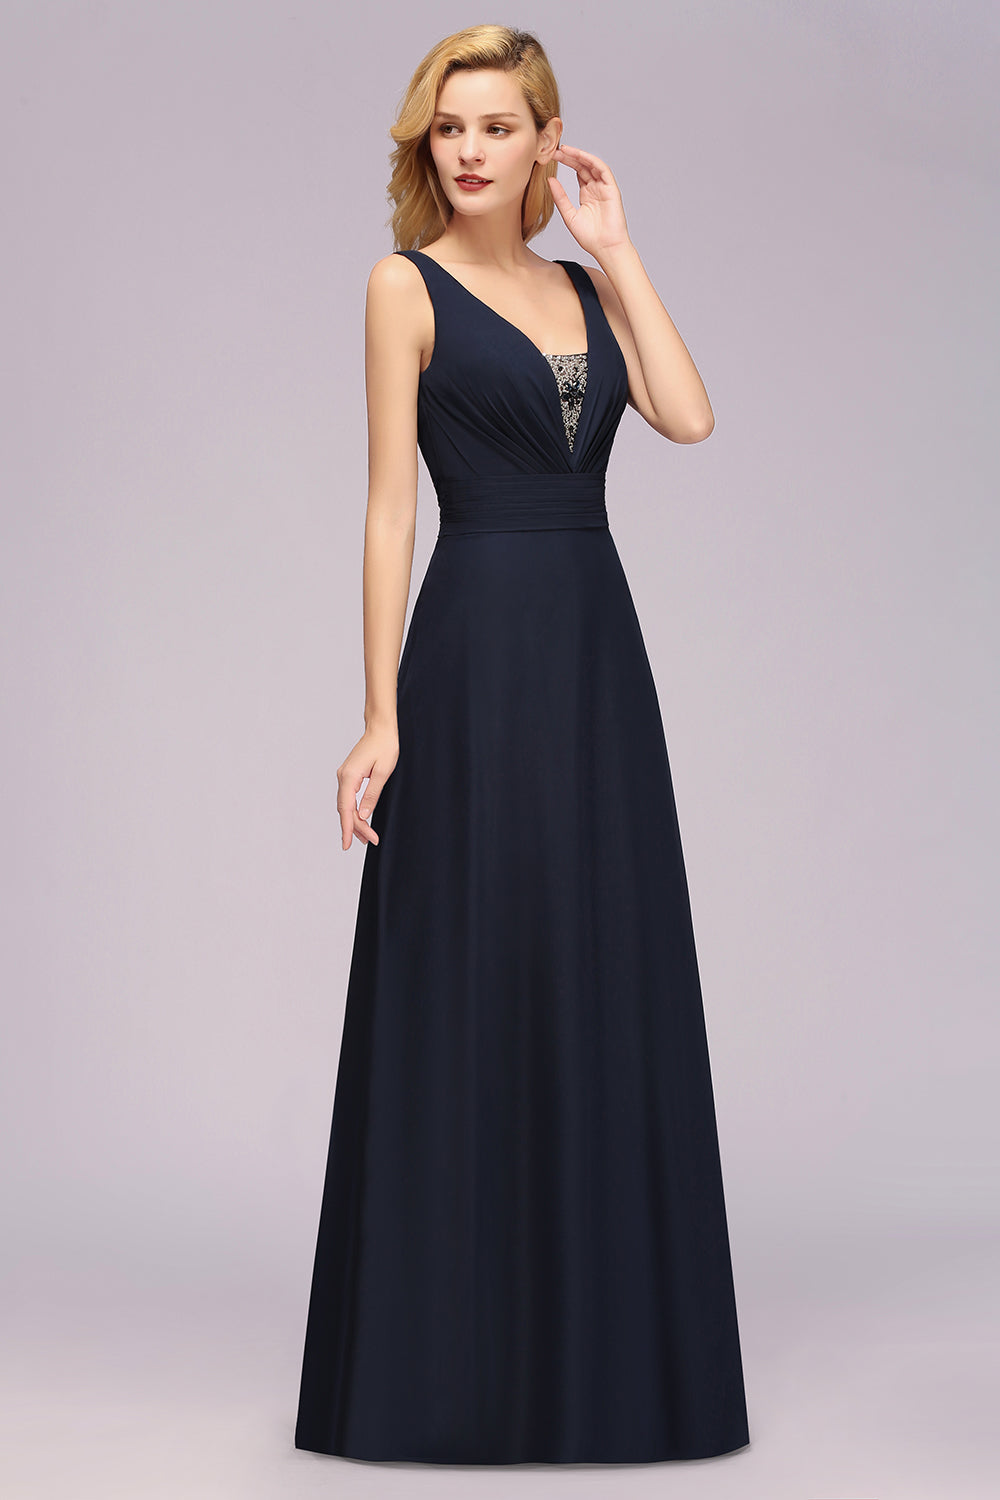 Finden Sie Designer Brautjungfernkleider Lang Günstig online bei babyonlinedress.de. Navy Blaues Brautjungfernkleid aus Chiffon maß geschneidert kaufen.